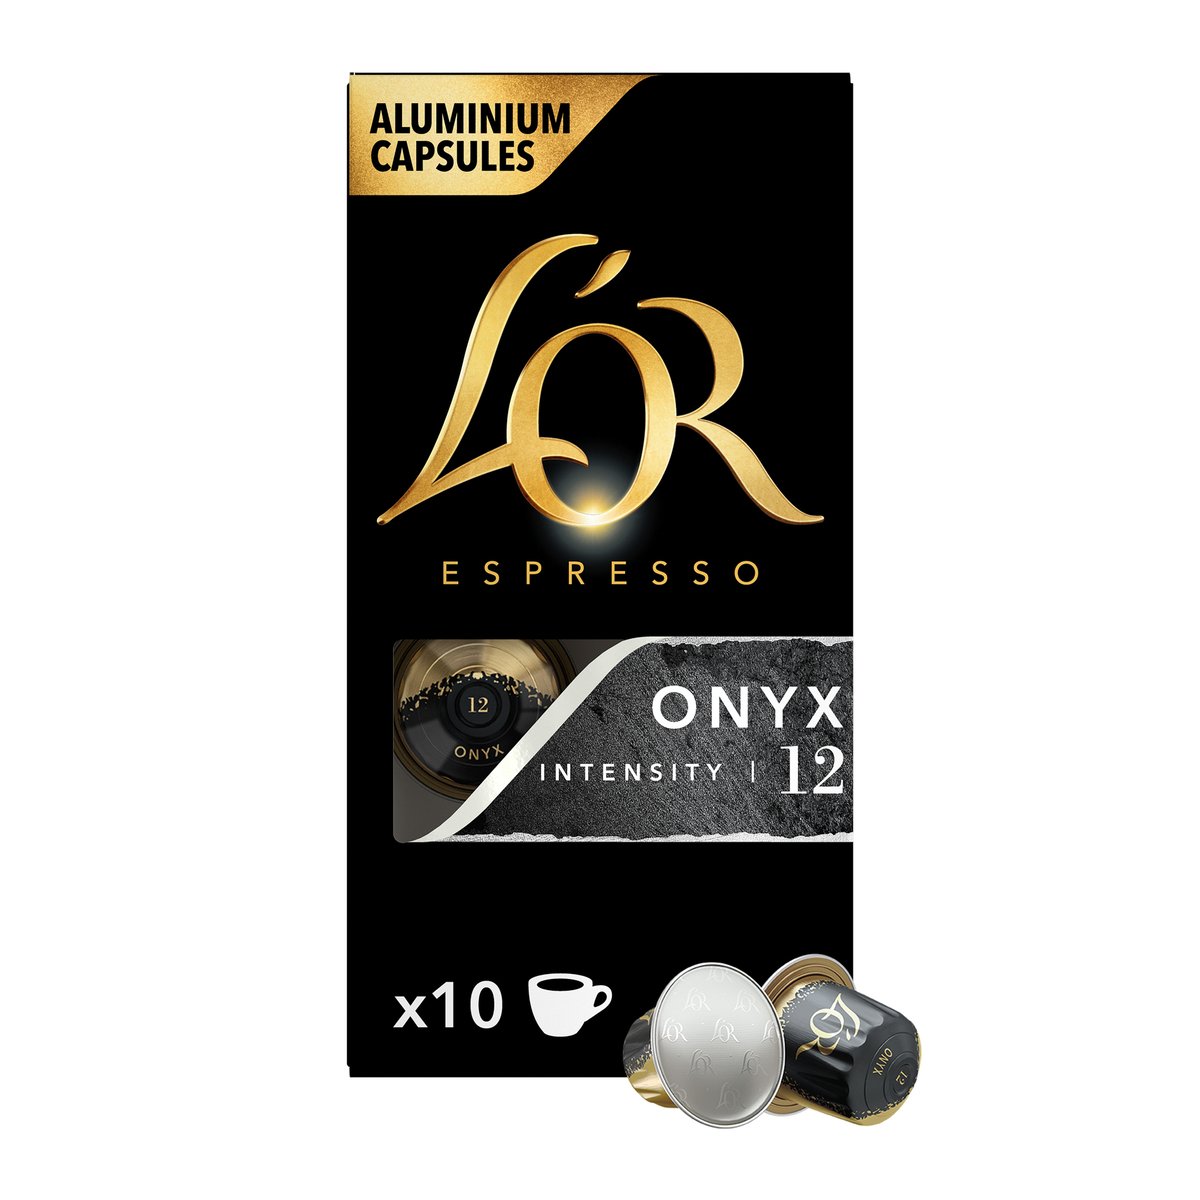 لور اسبريسو أونيكس كبسولات قهوة ألومنيوم بكثافة 12 عبوة توفيرية 10 حبات